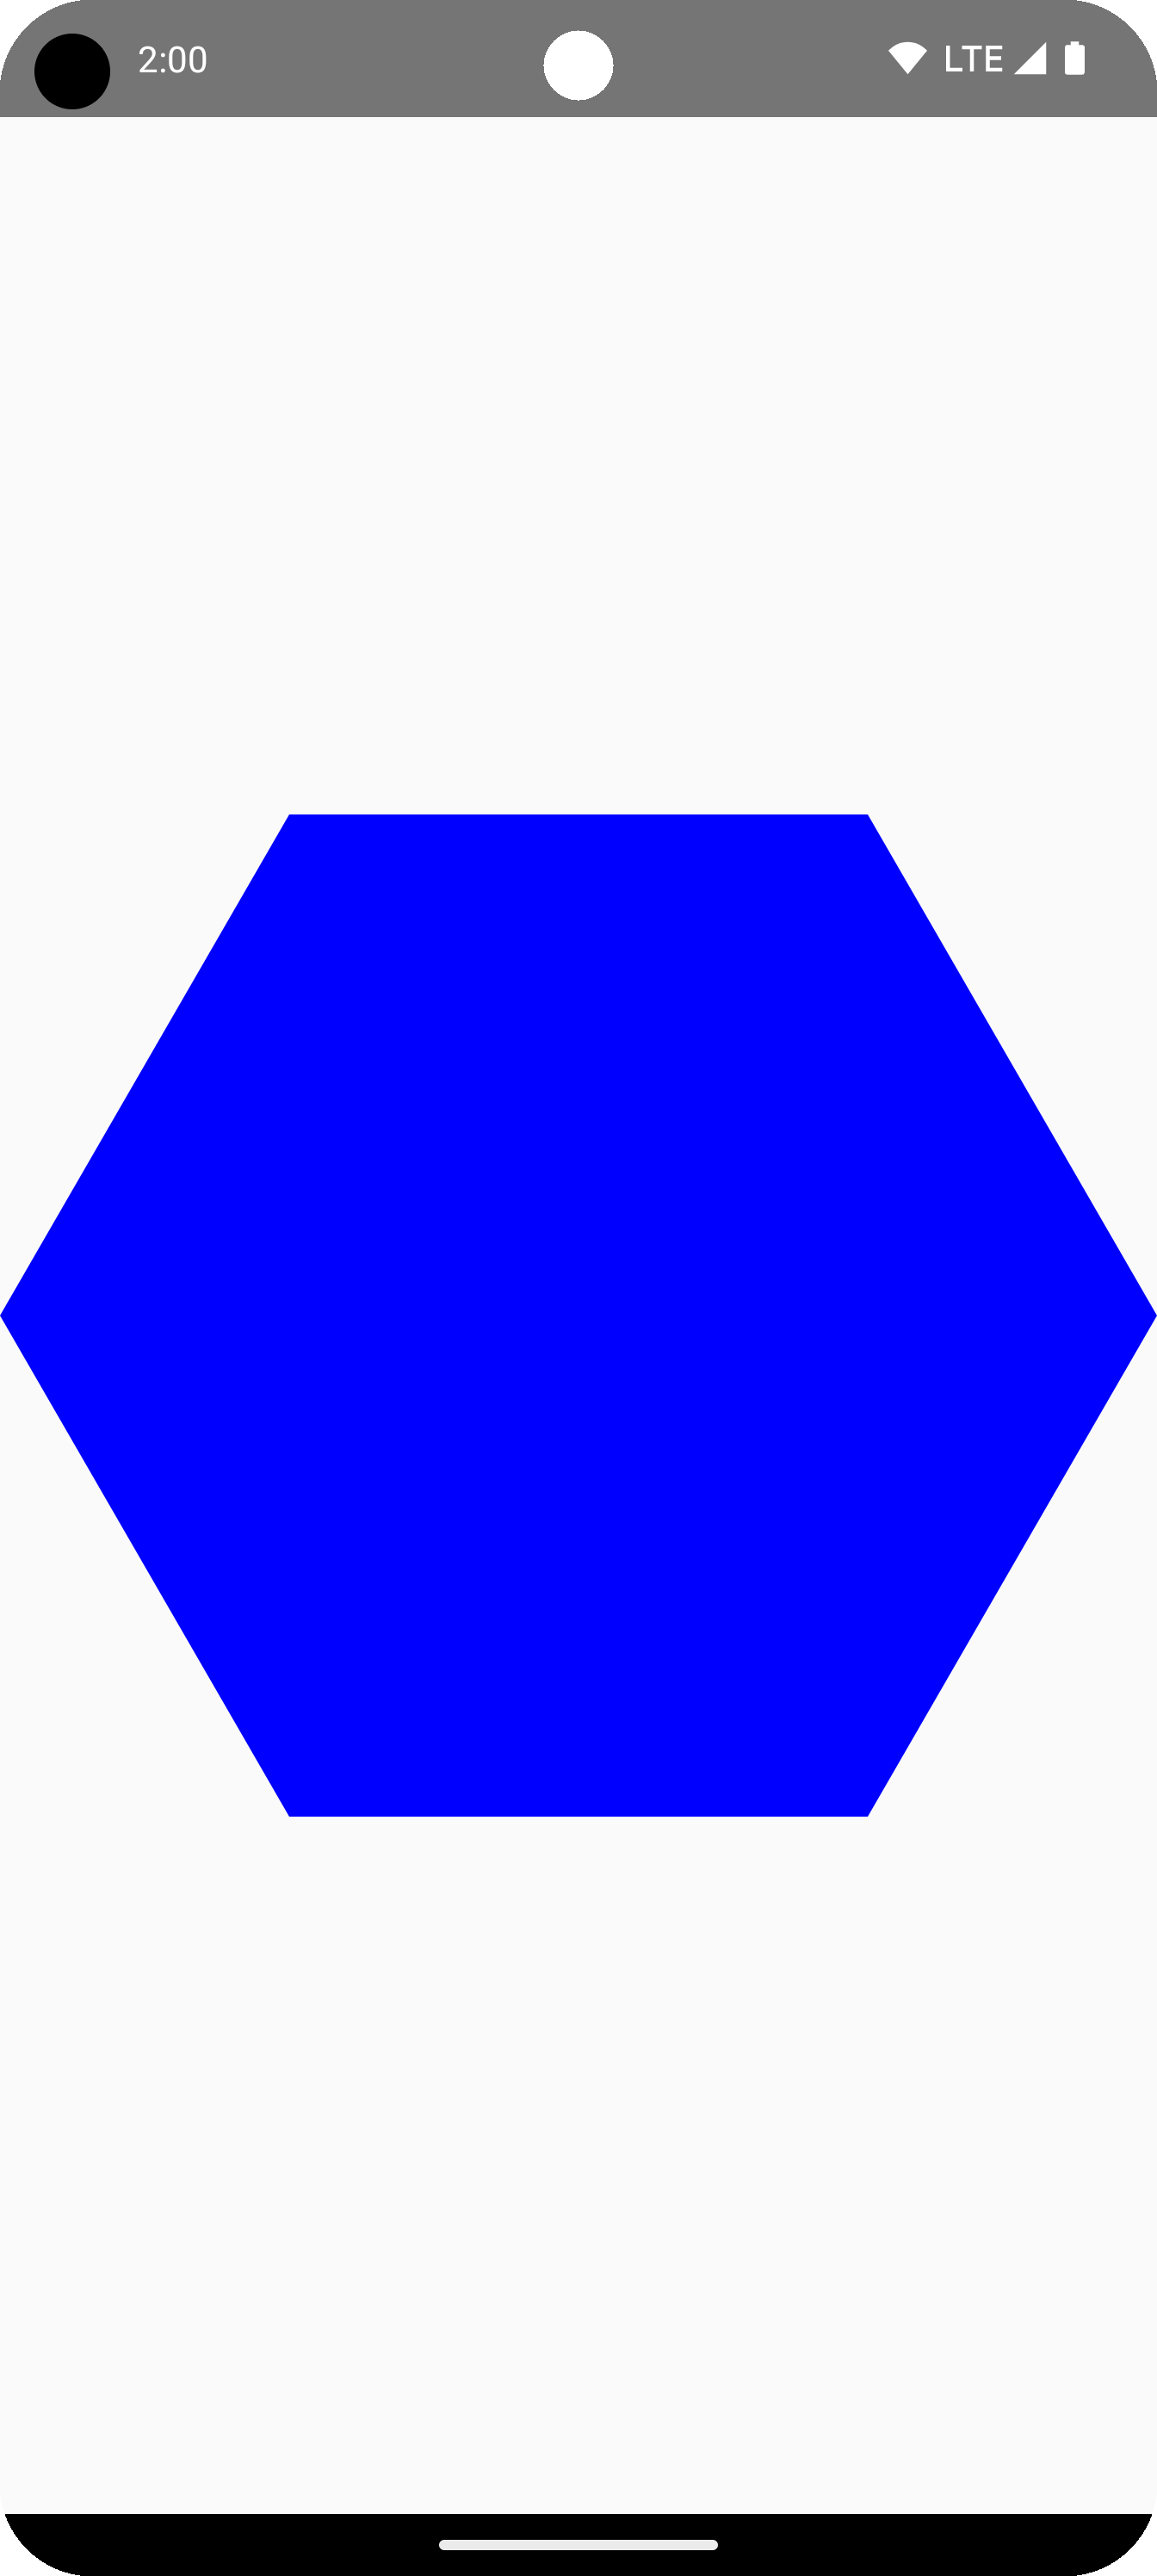 مضلّع أزرق في وسط منطقة الرسم